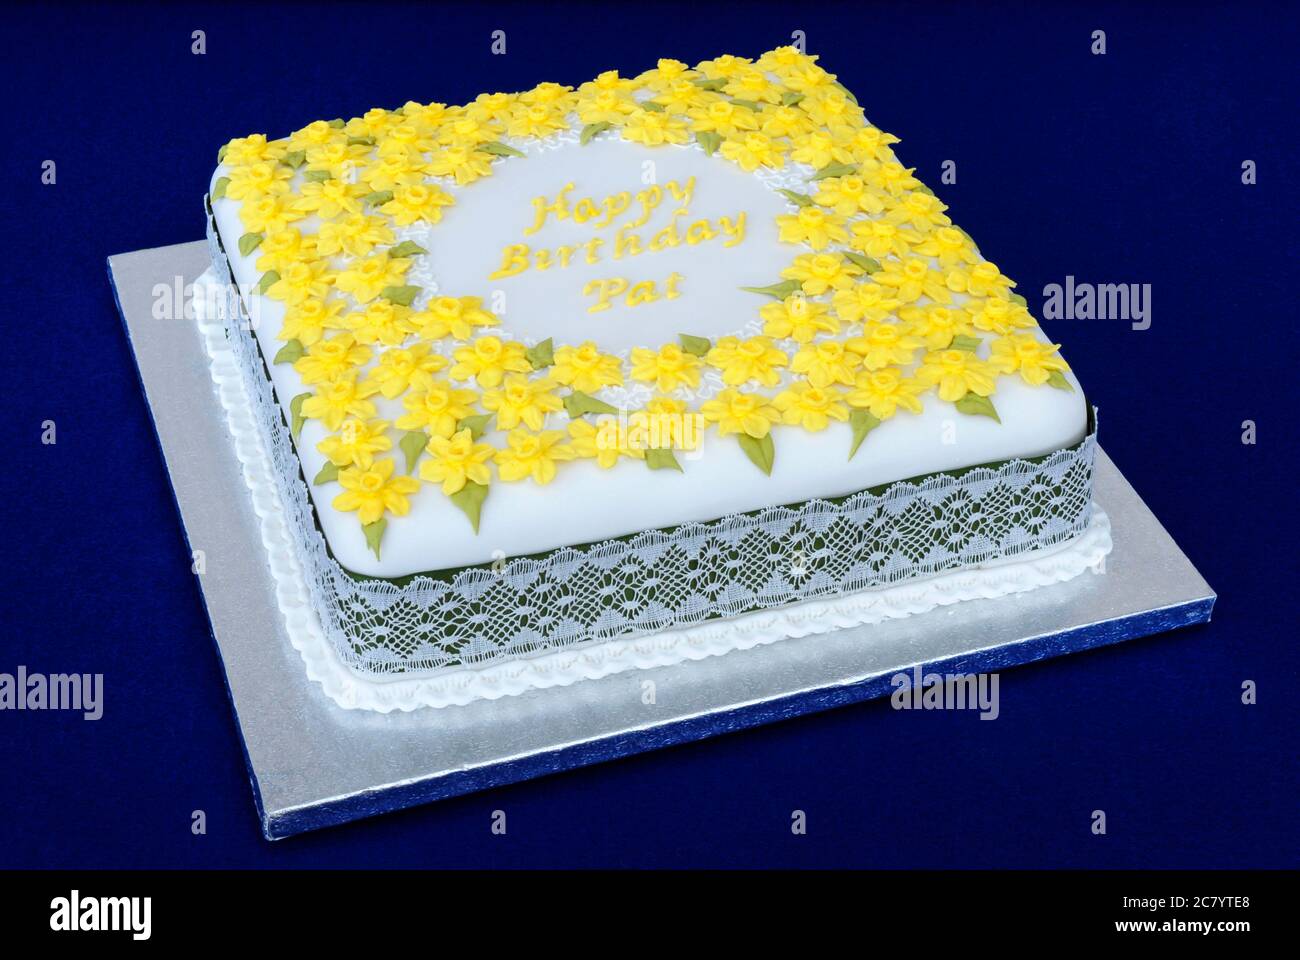 Torta di compleanno con zucchero quadrato, decorata con molti fiori gialli e il saluto 'buon compleanno'. Foto Stock